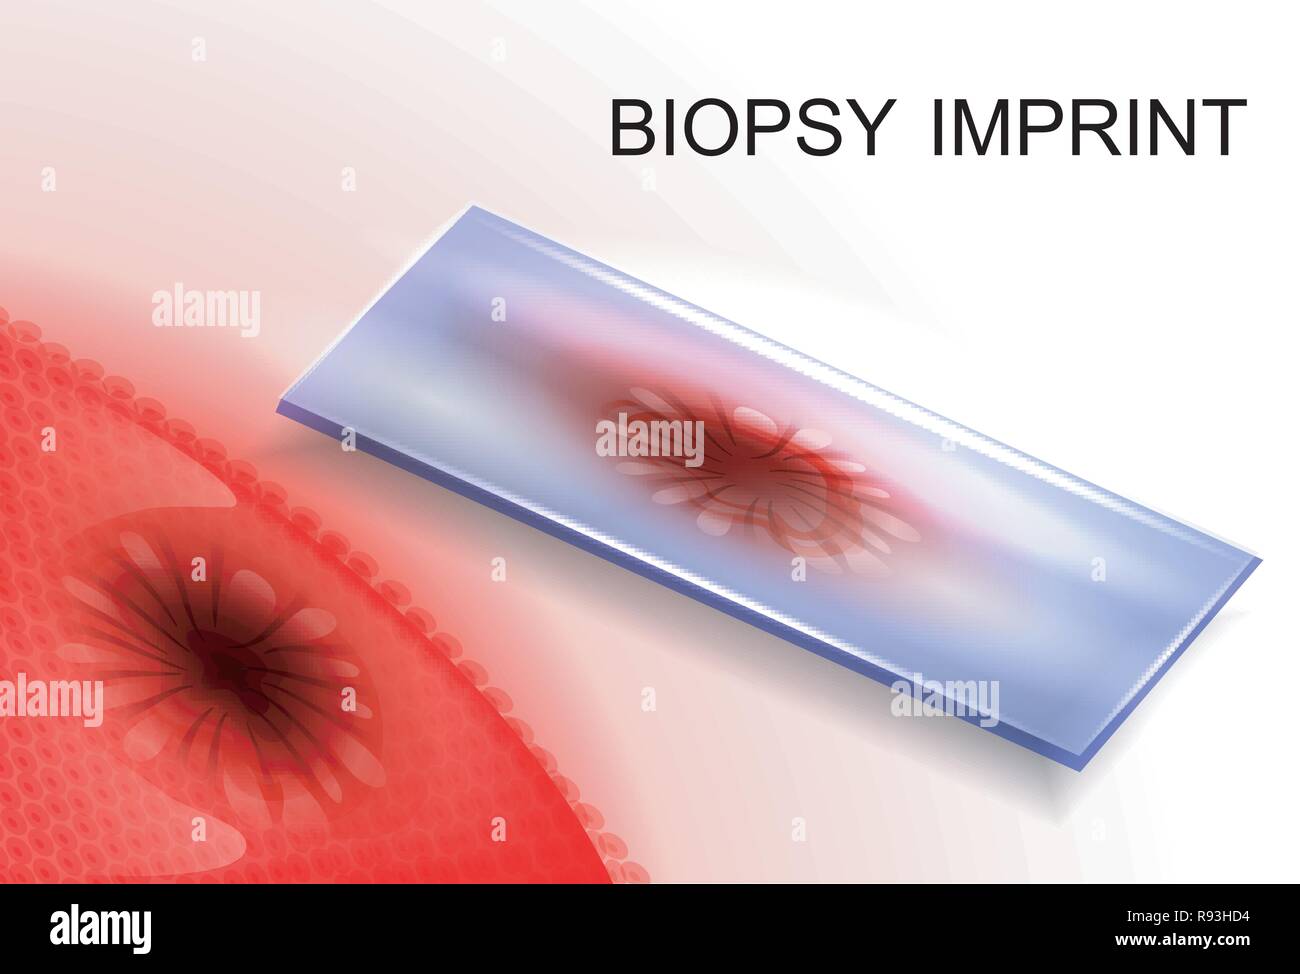 Illustrazione vettoriale di una biopsia imprint.la diagnosi del cancro Illustrazione Vettoriale